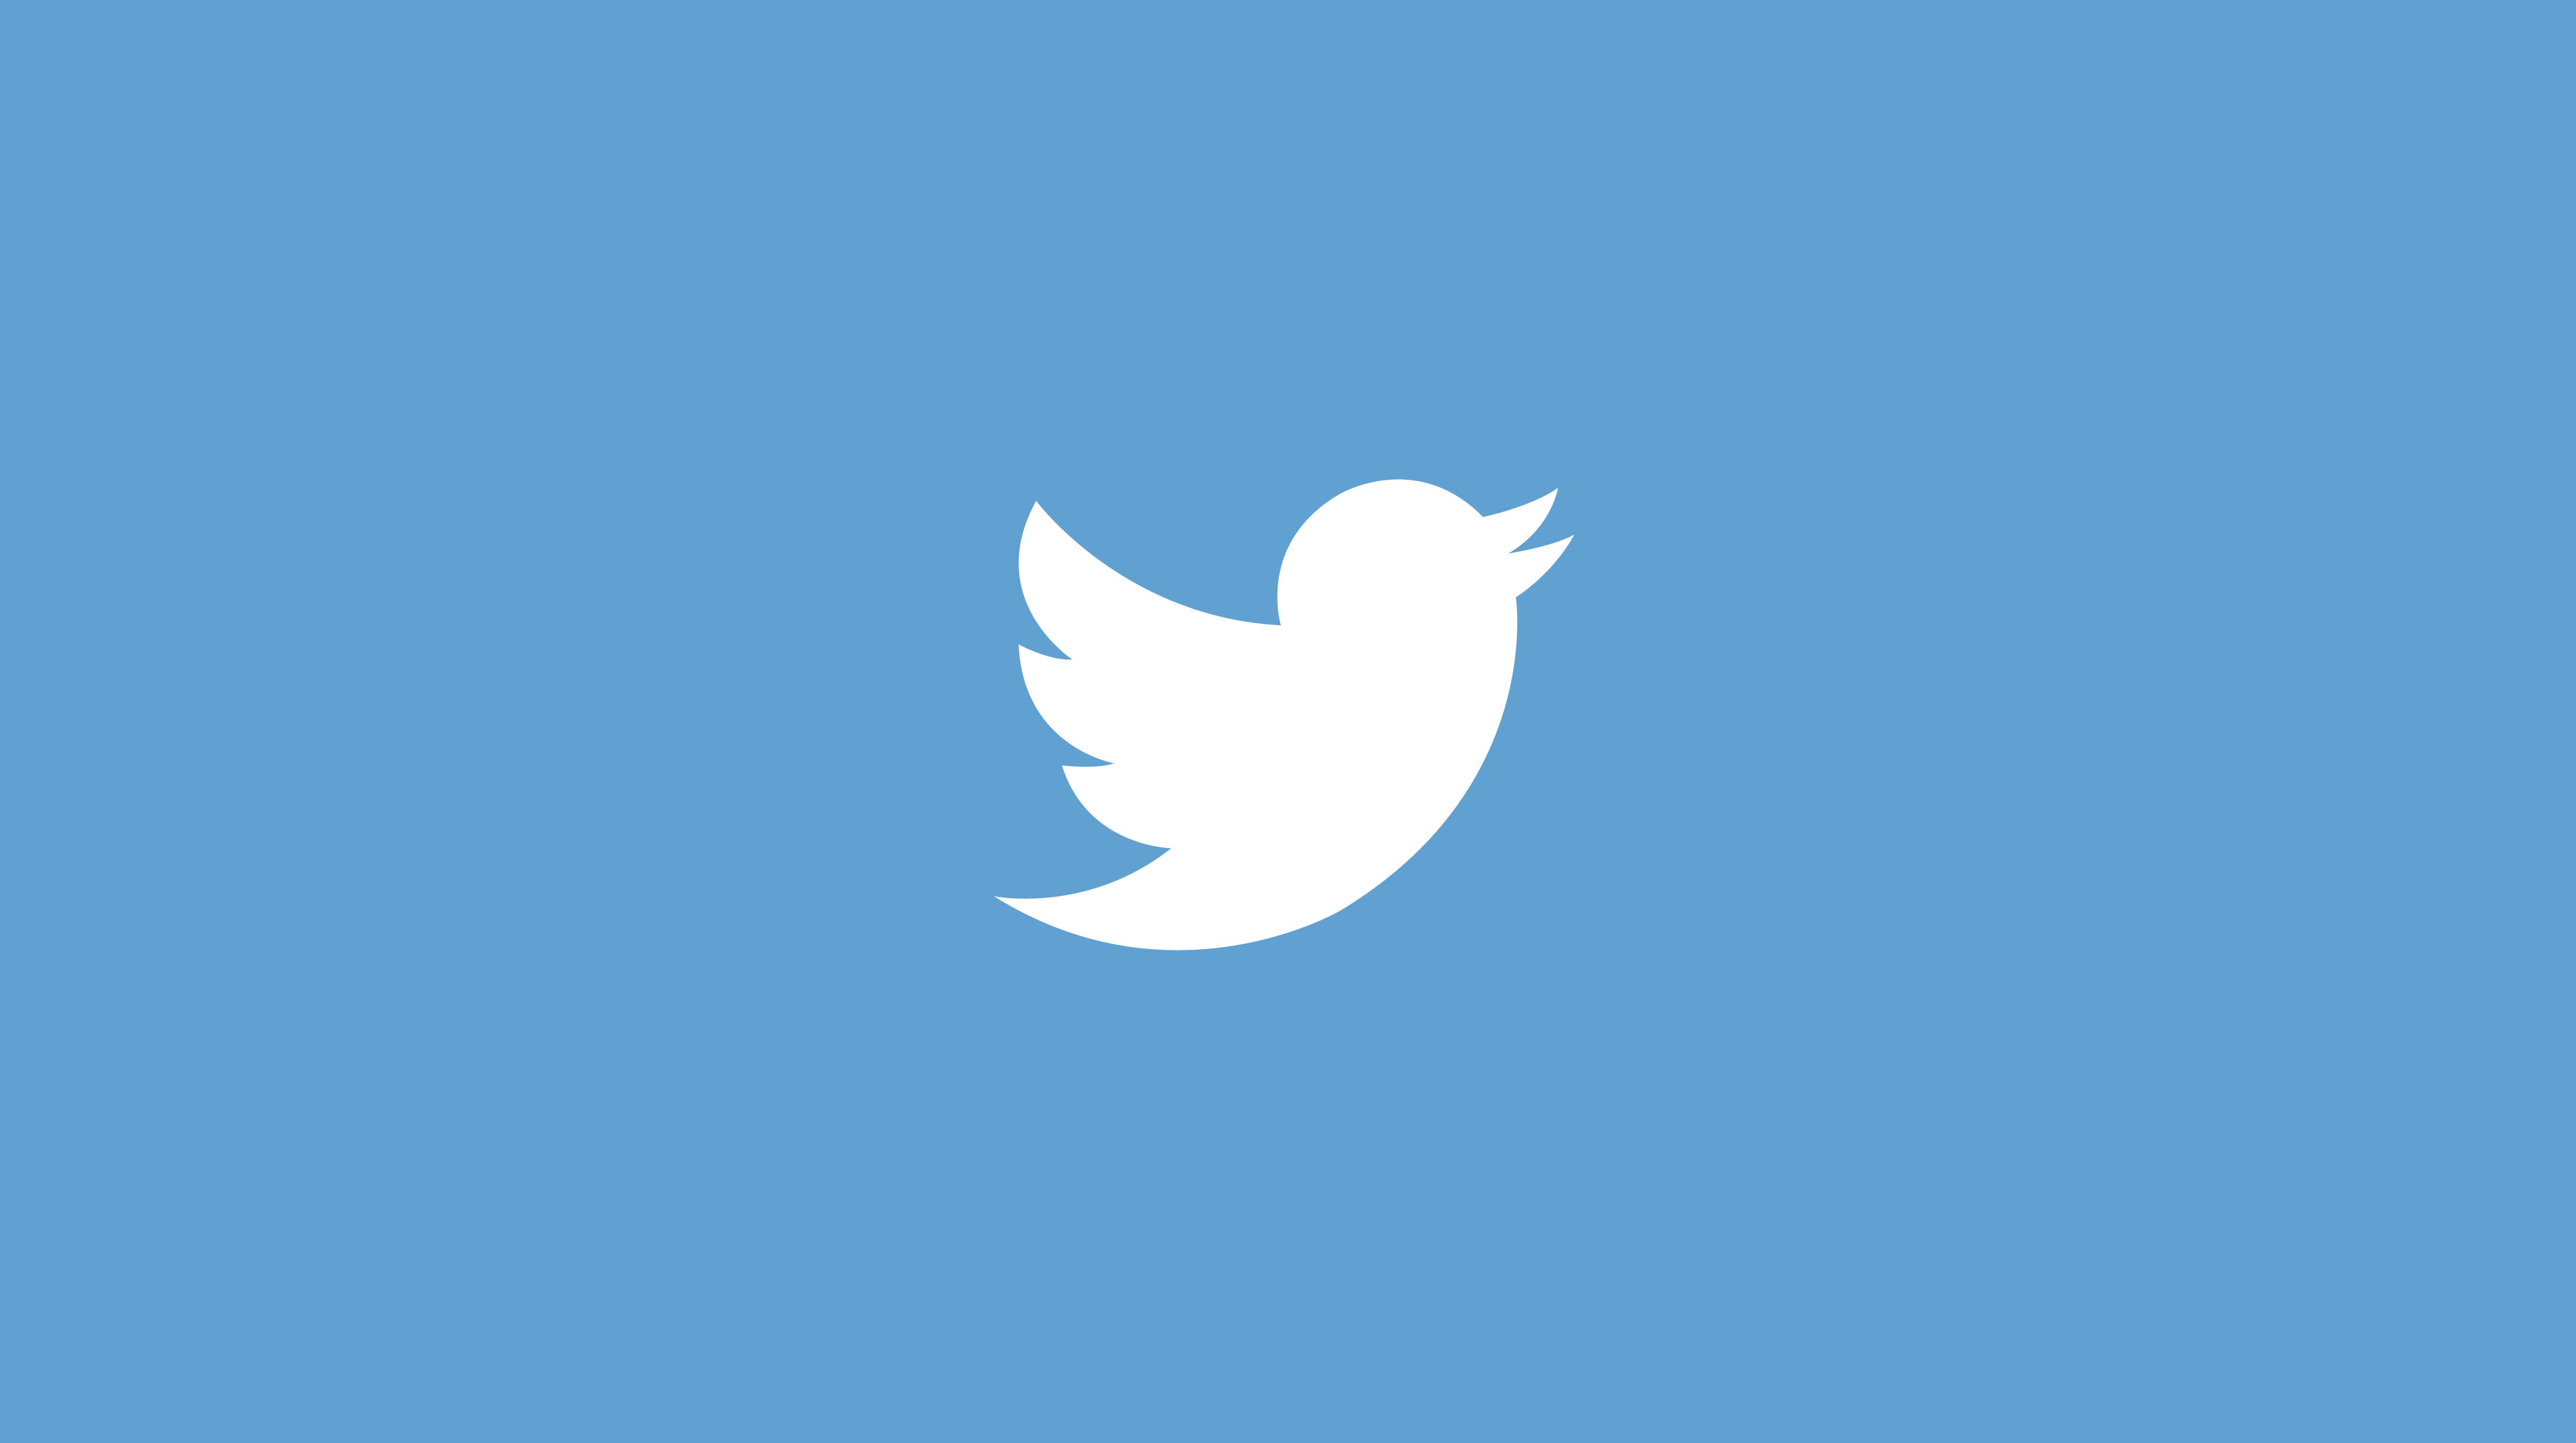 App Store 30 سبتمبر 2020
Twitter طرح ميزة التغريدات الصوتية الجديدة لمزيد من مستخدمي iOS